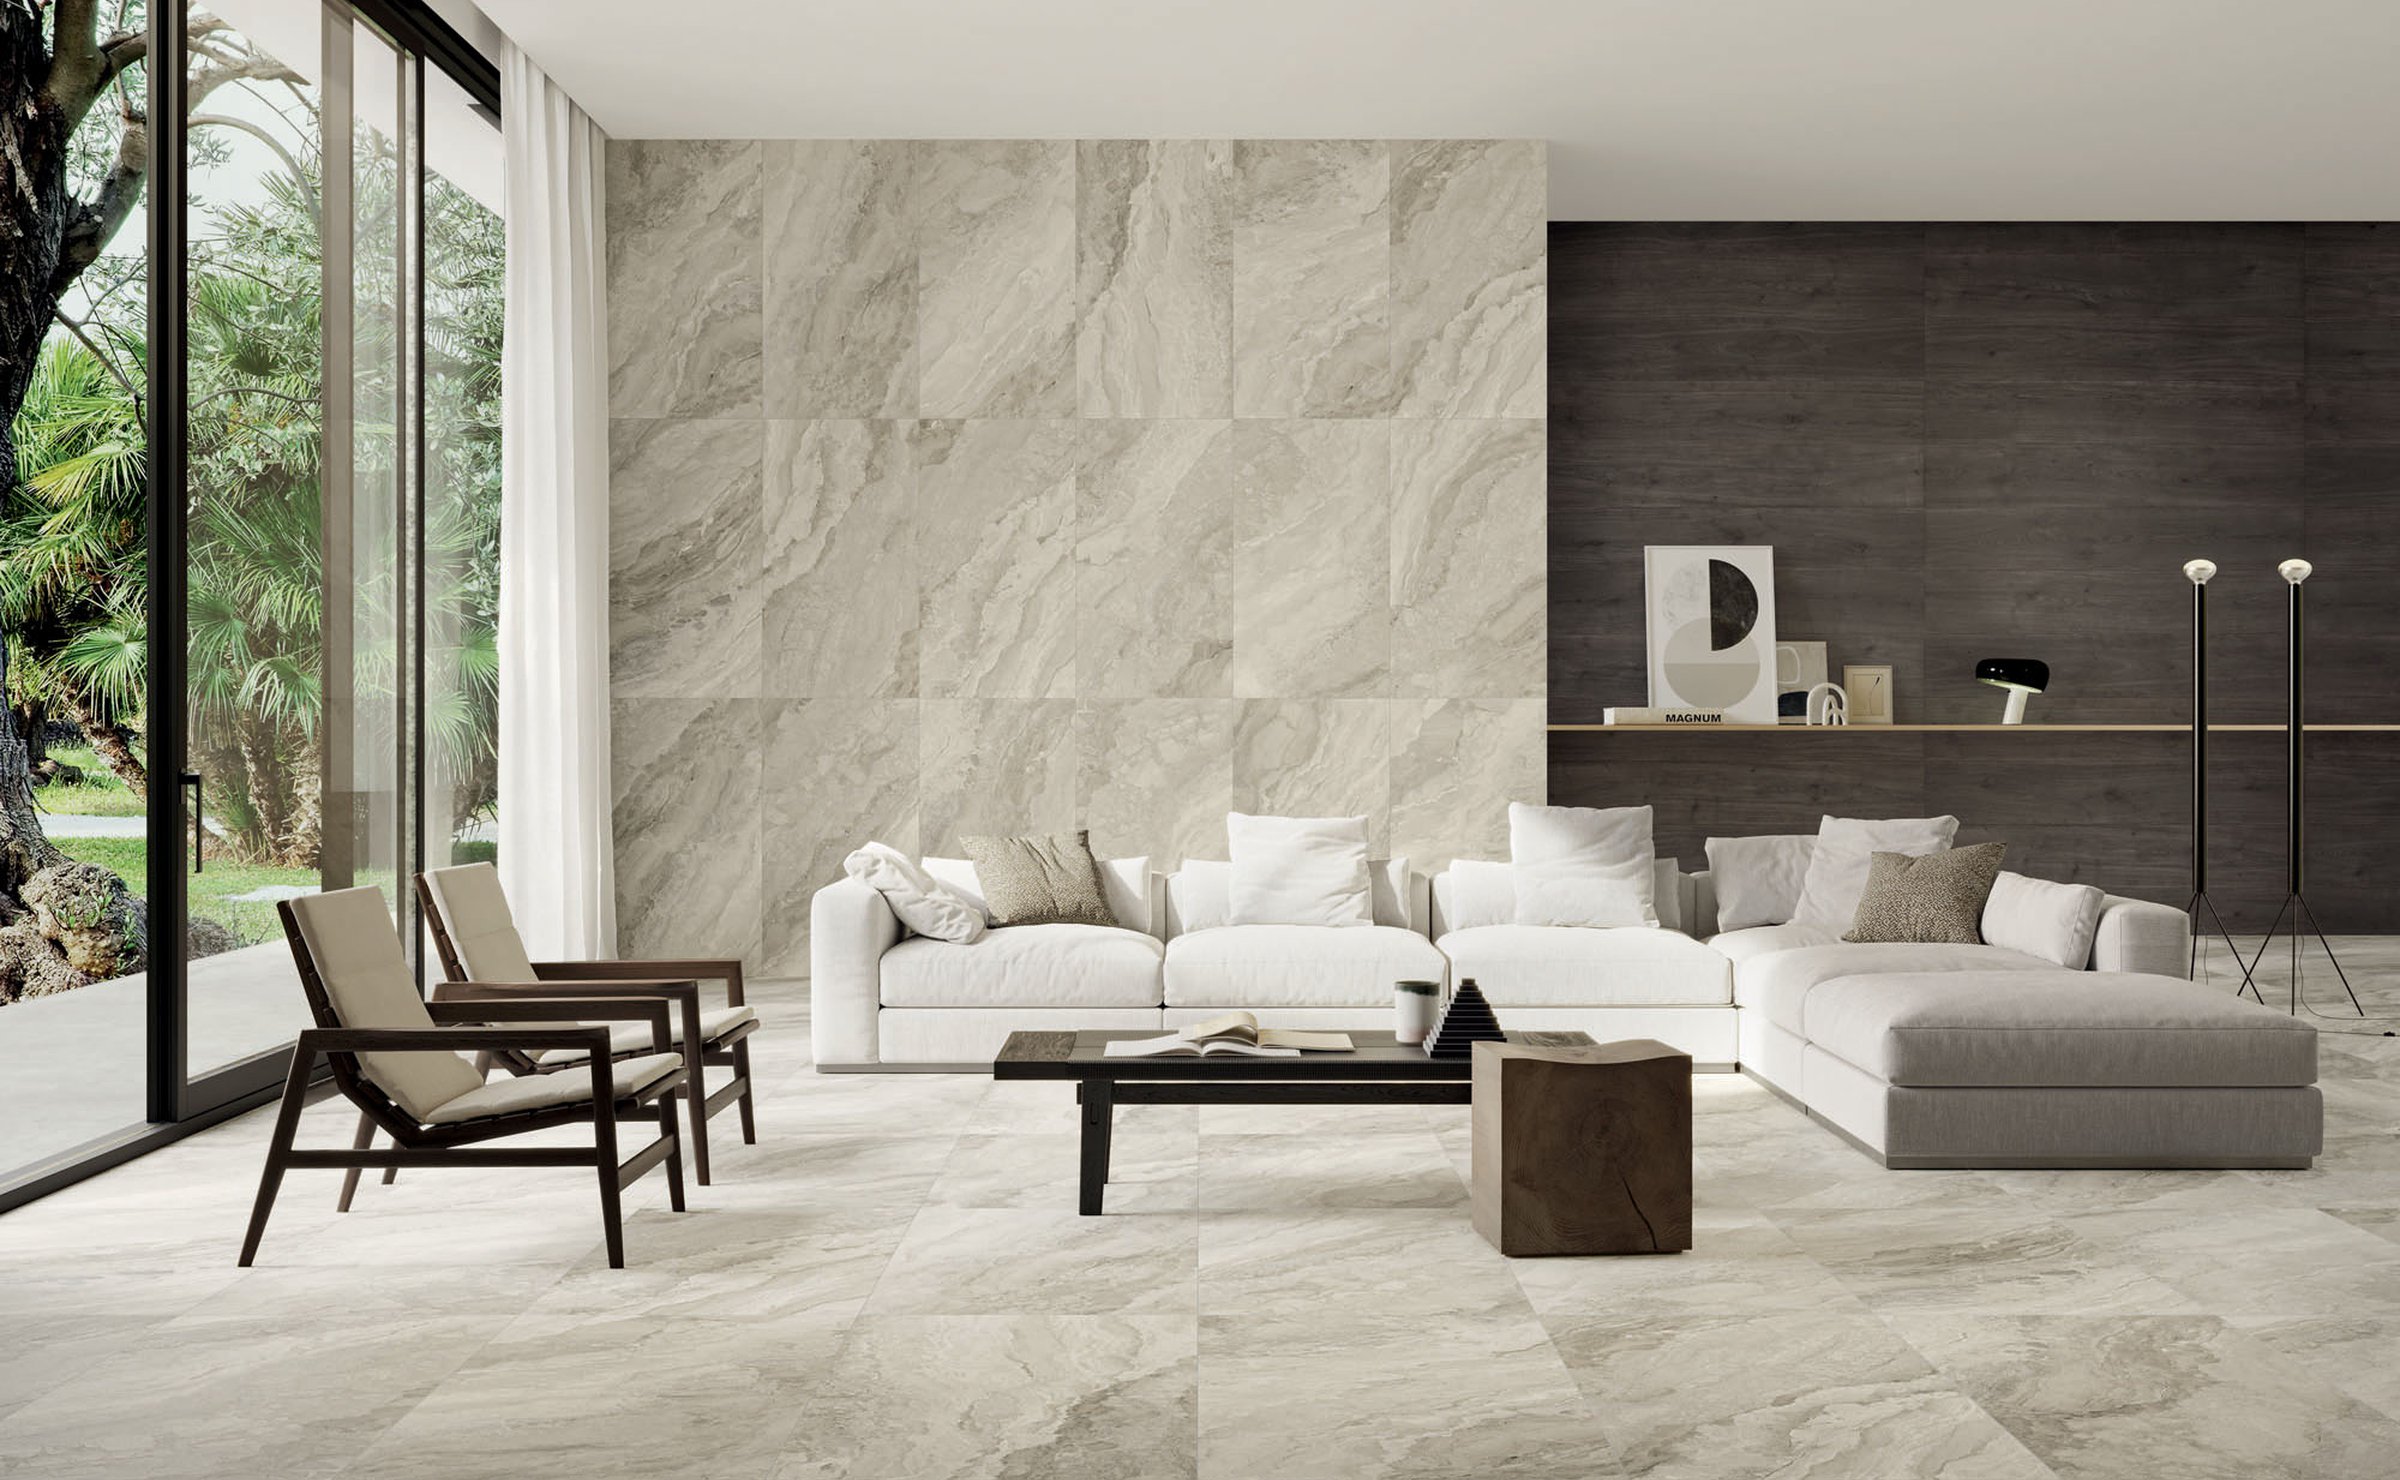 Mystic: luxury ceramic tiles